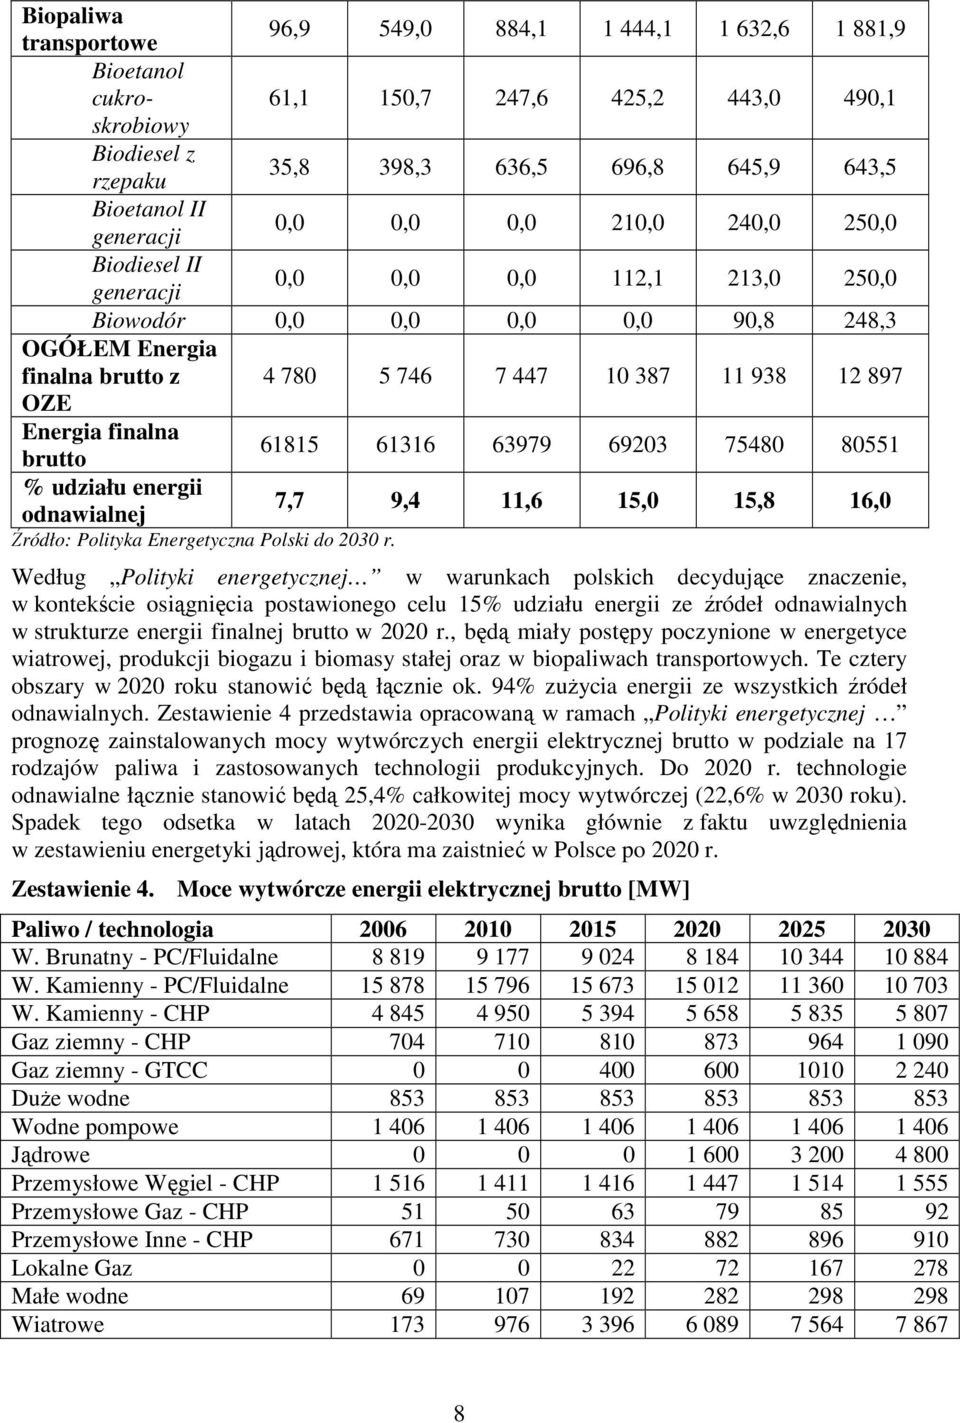 OZE Energia finalna brutto 61815 61316 63979 69203 75480 80551 % udziału energii odnawialnej 7,7 9,4 11,6 15,0 15,8 16,0 Źródło: Polityka Energetyczna Polski do 2030 r.